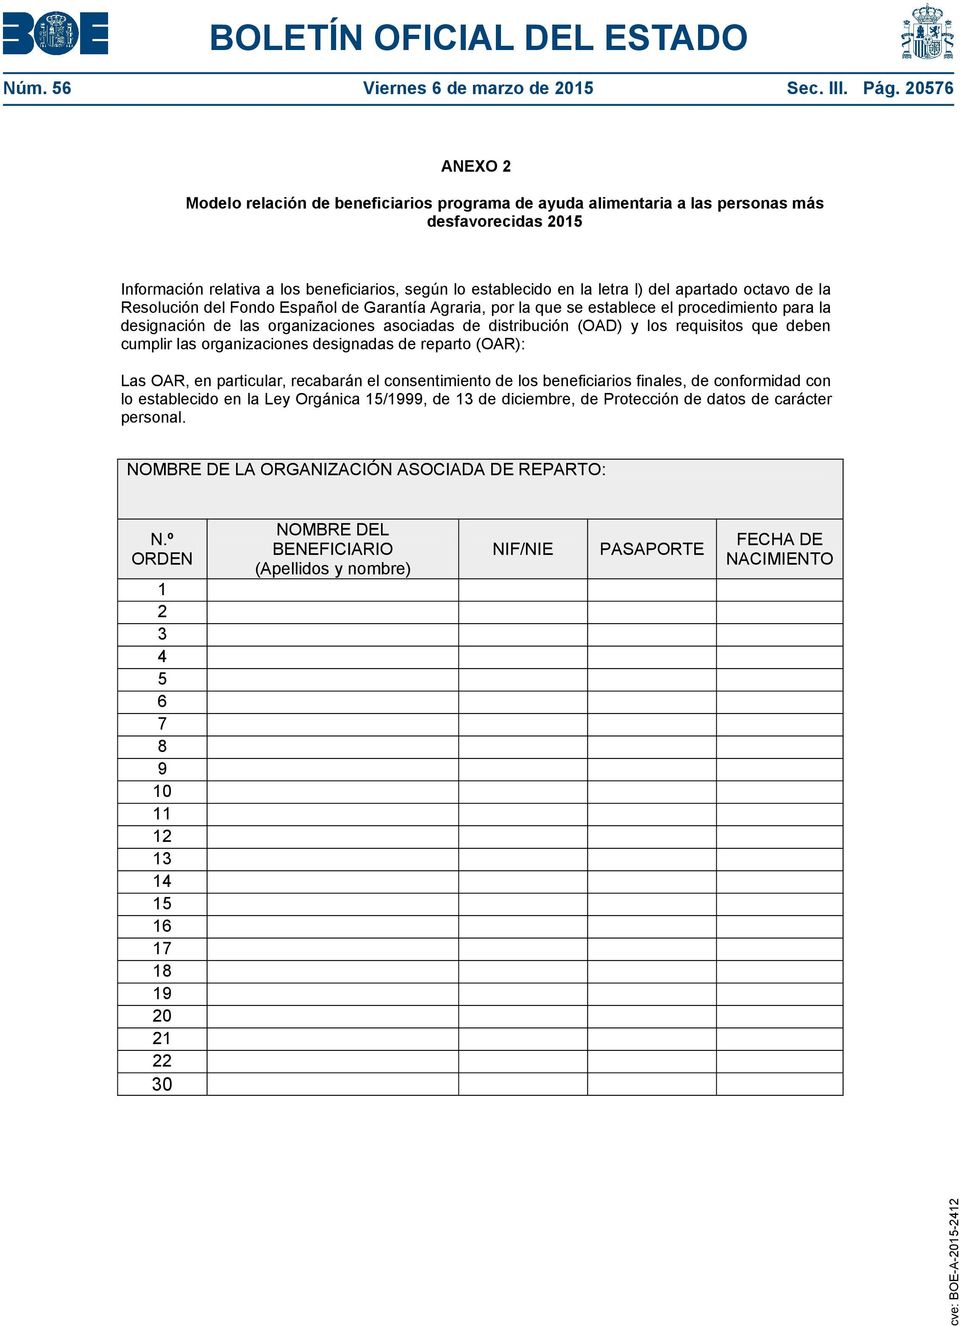 apartado octavo de la Resolución del Fondo Español de Garantía Agraria, por la que se establece el procedimiento para la designación de las organizaciones asociadas de distribución (OAD) y los